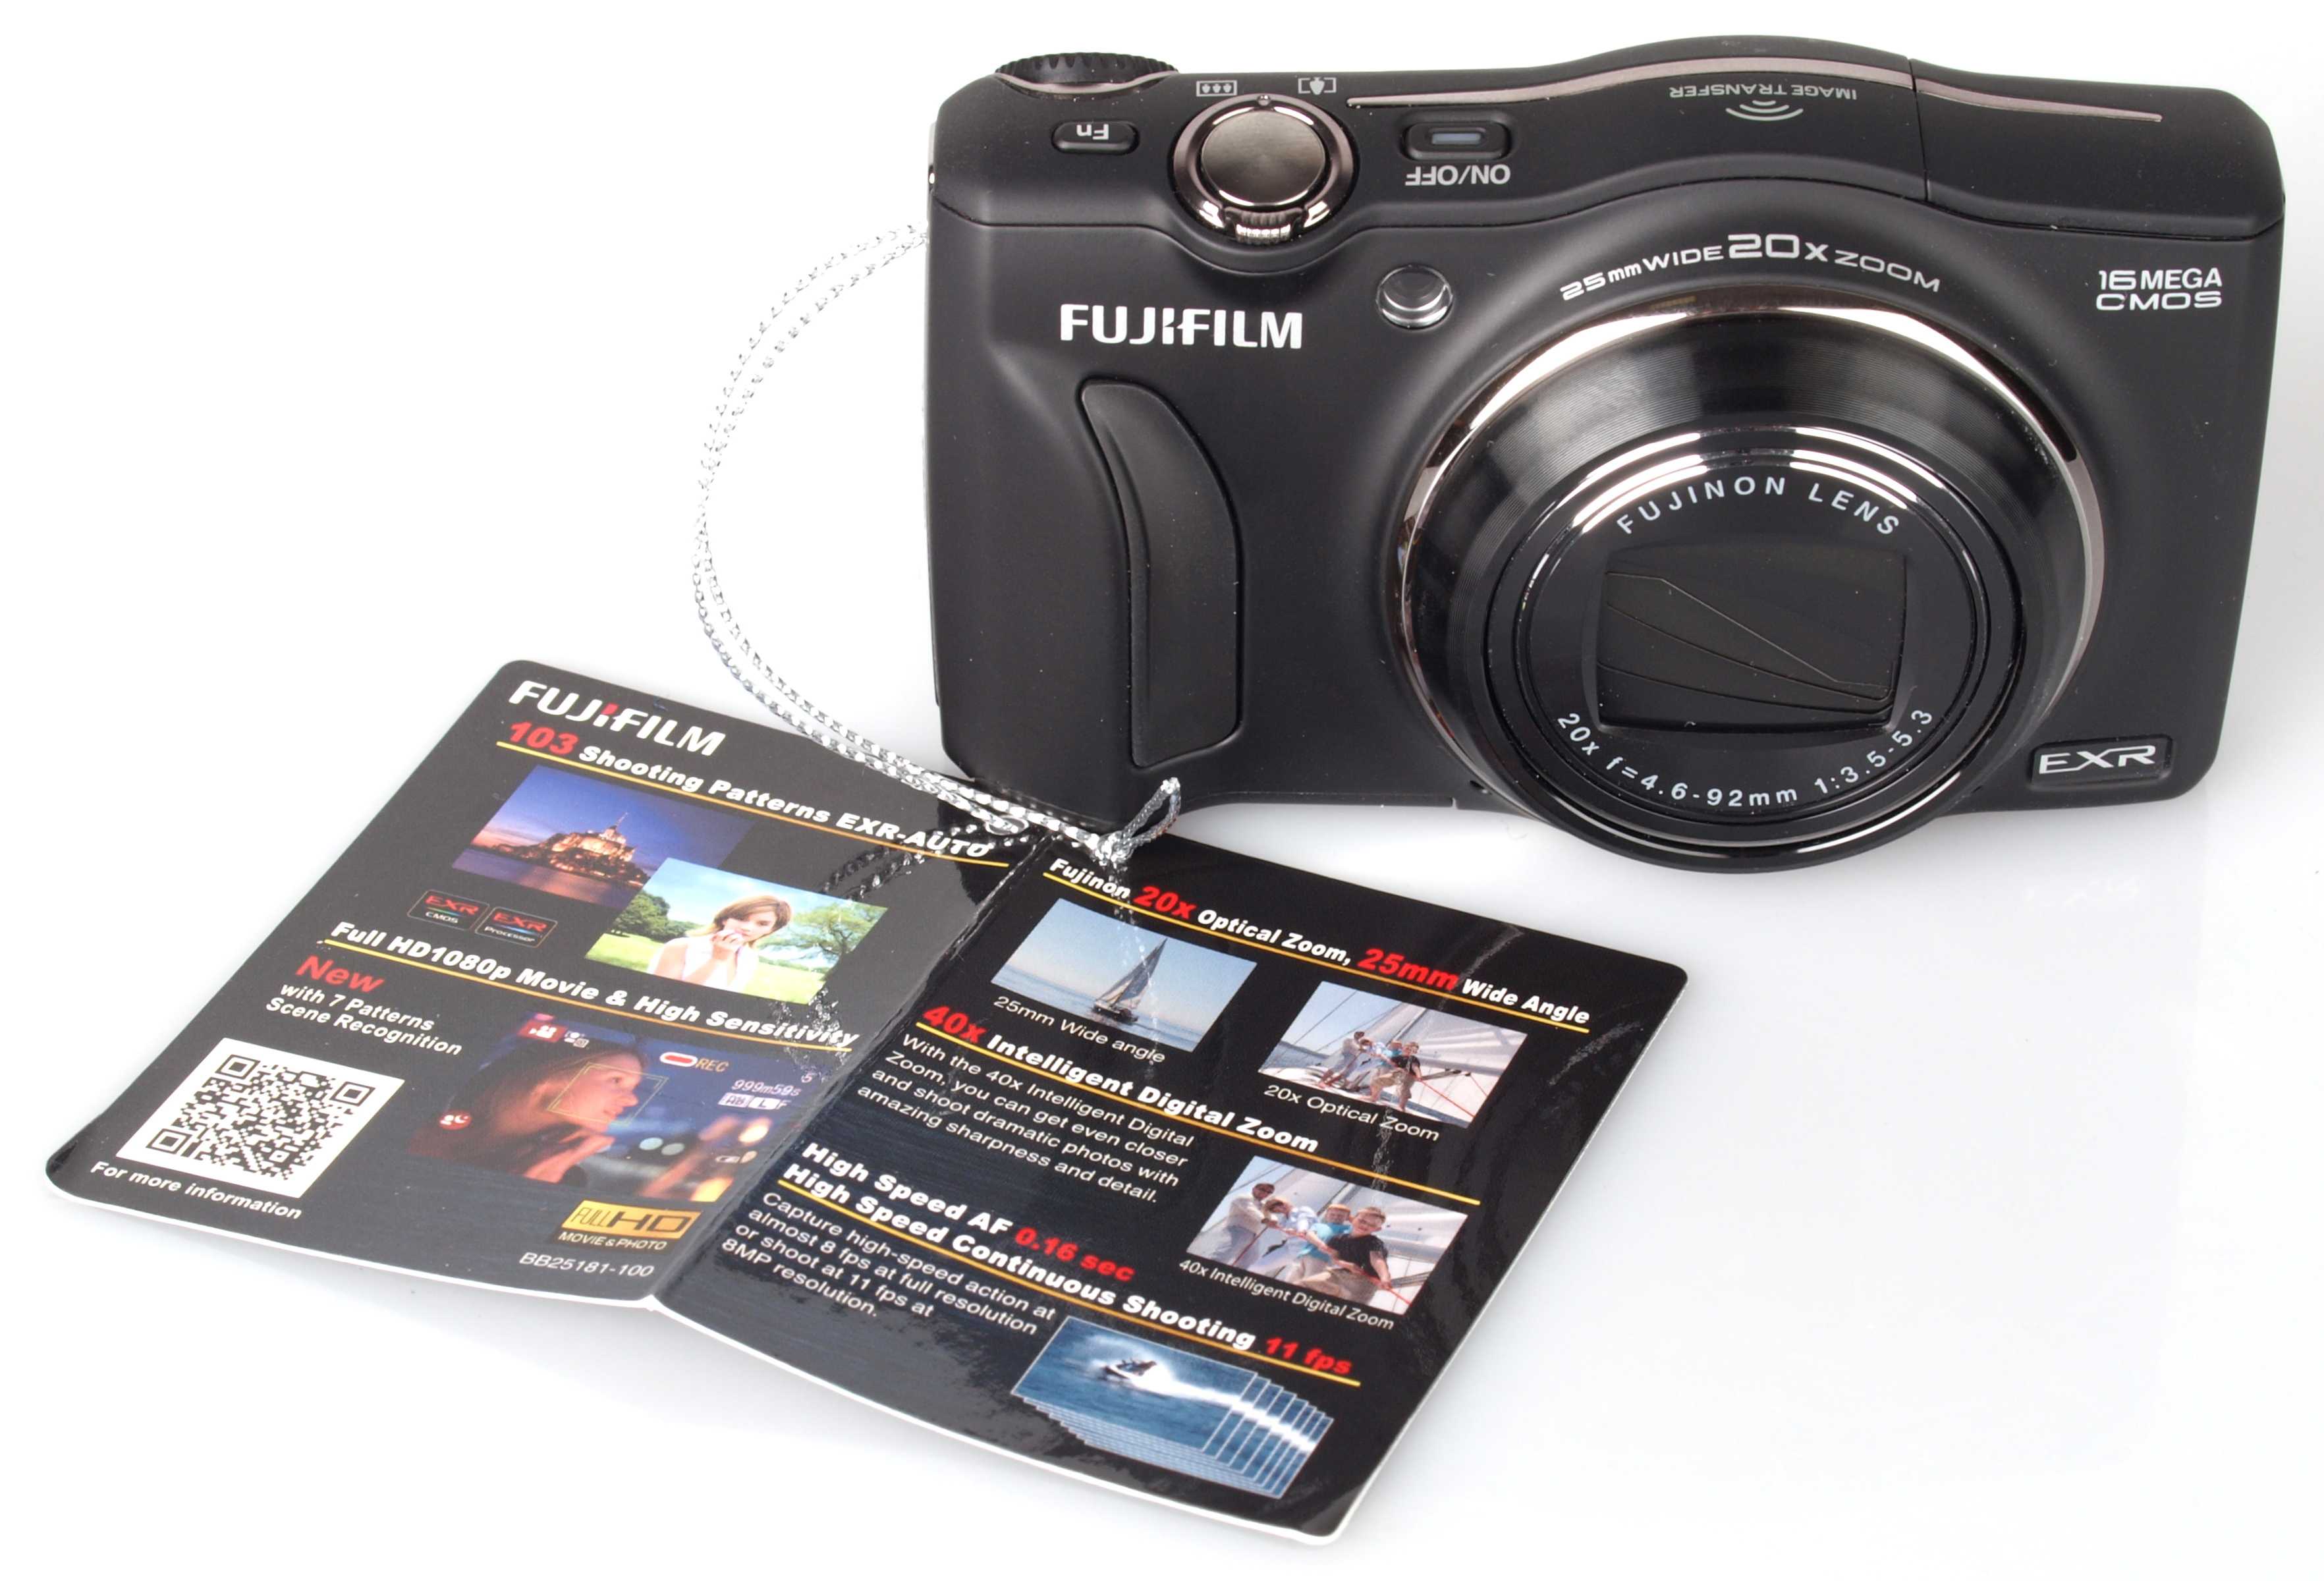 Fujifilm finepix f70exr